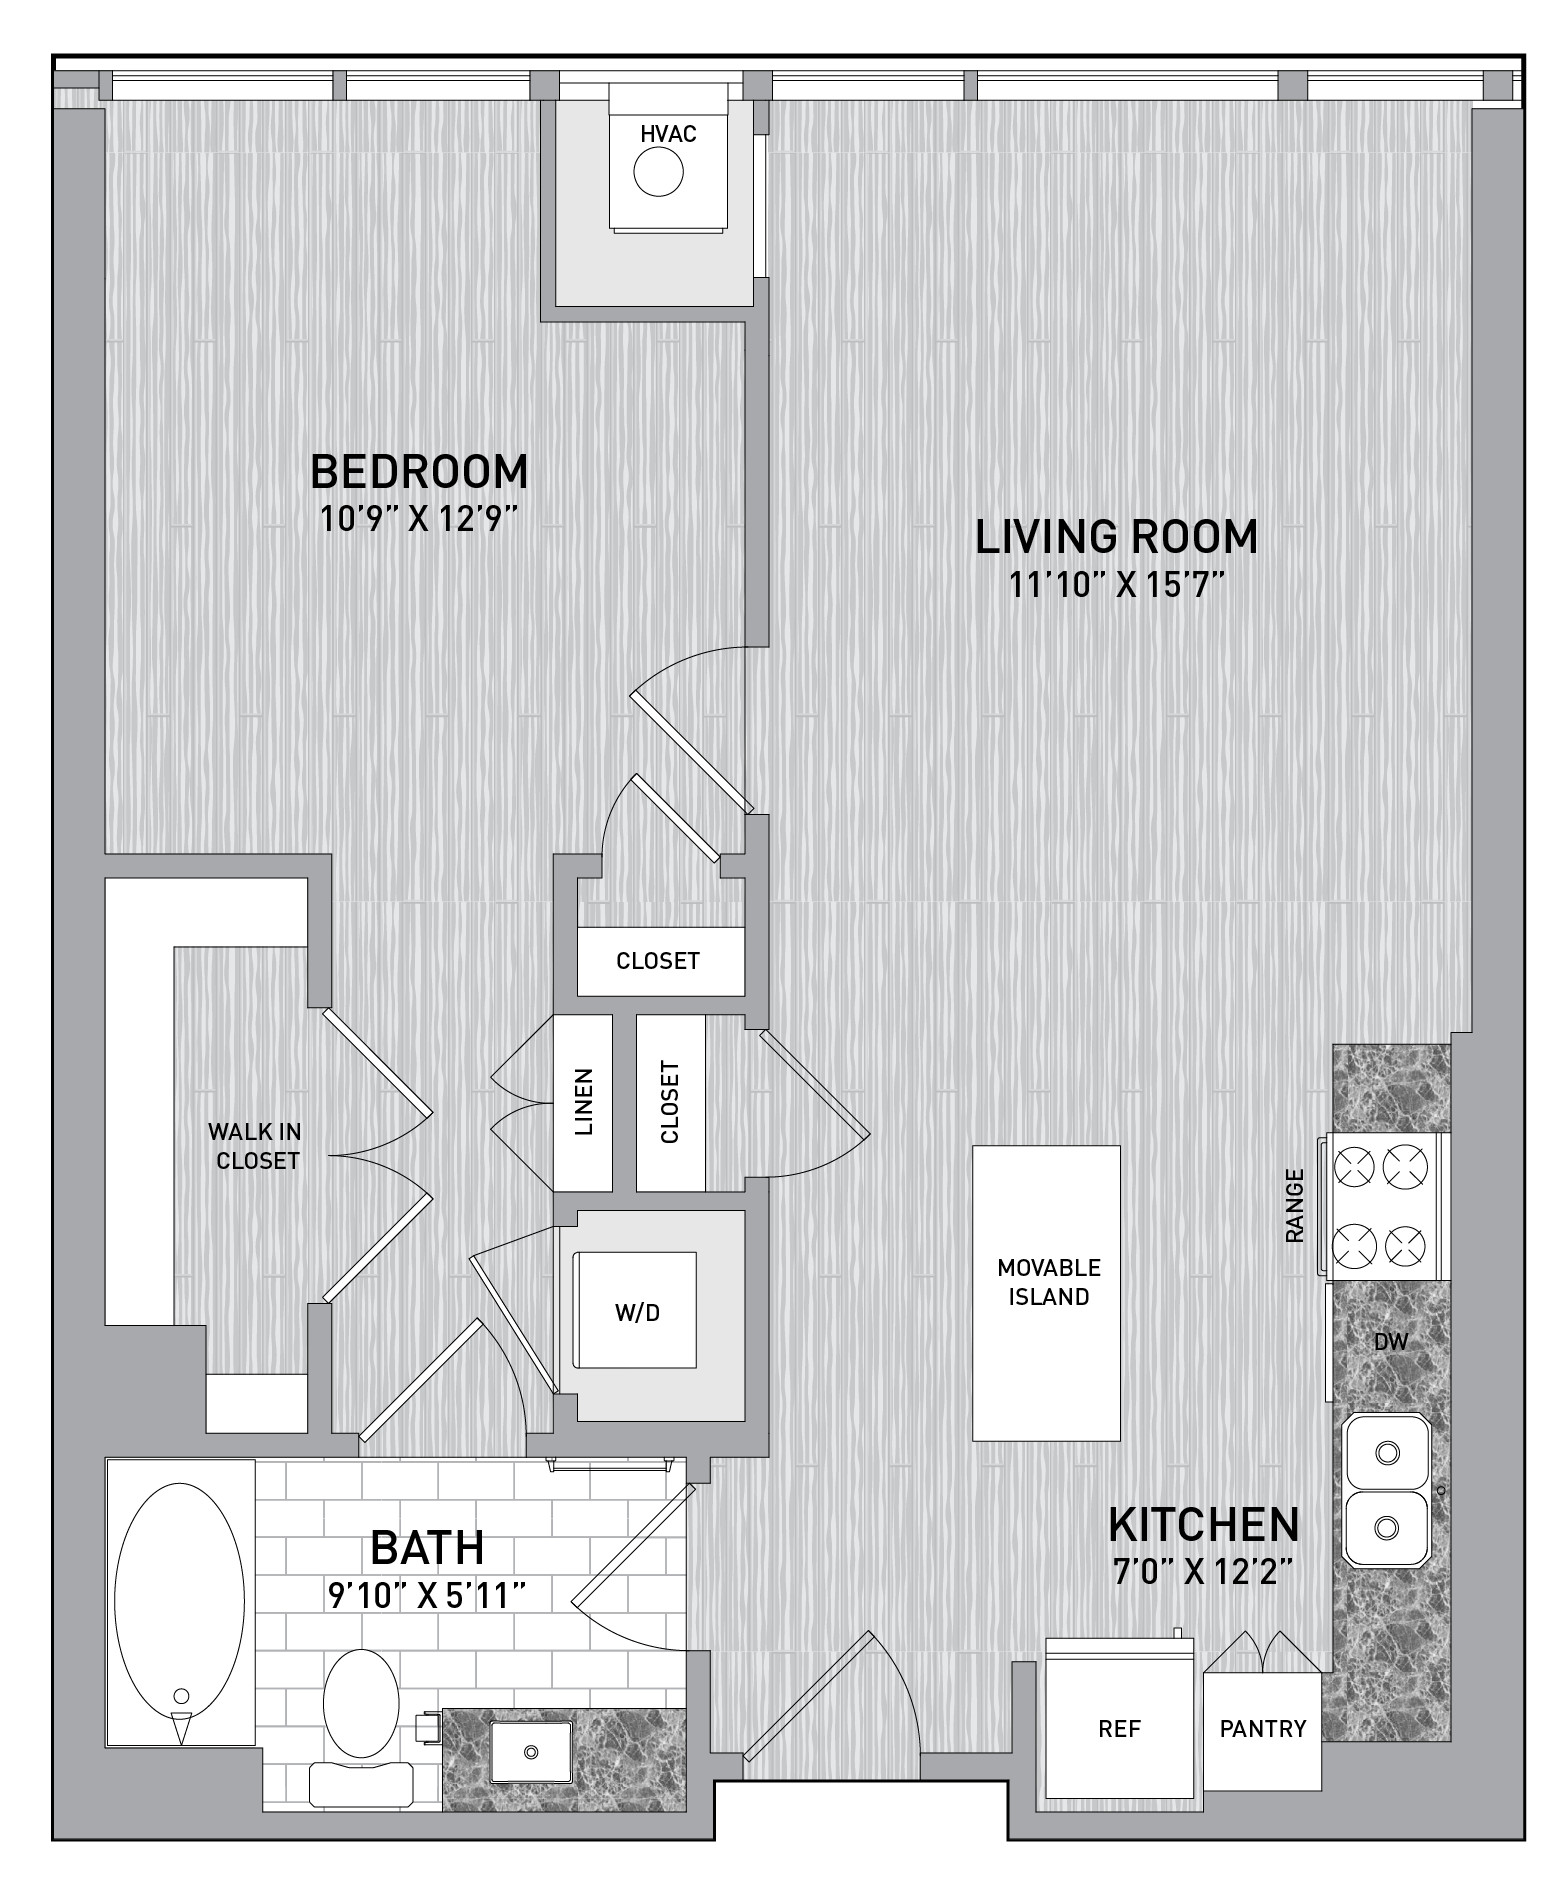 floorplan image of unit id 0715